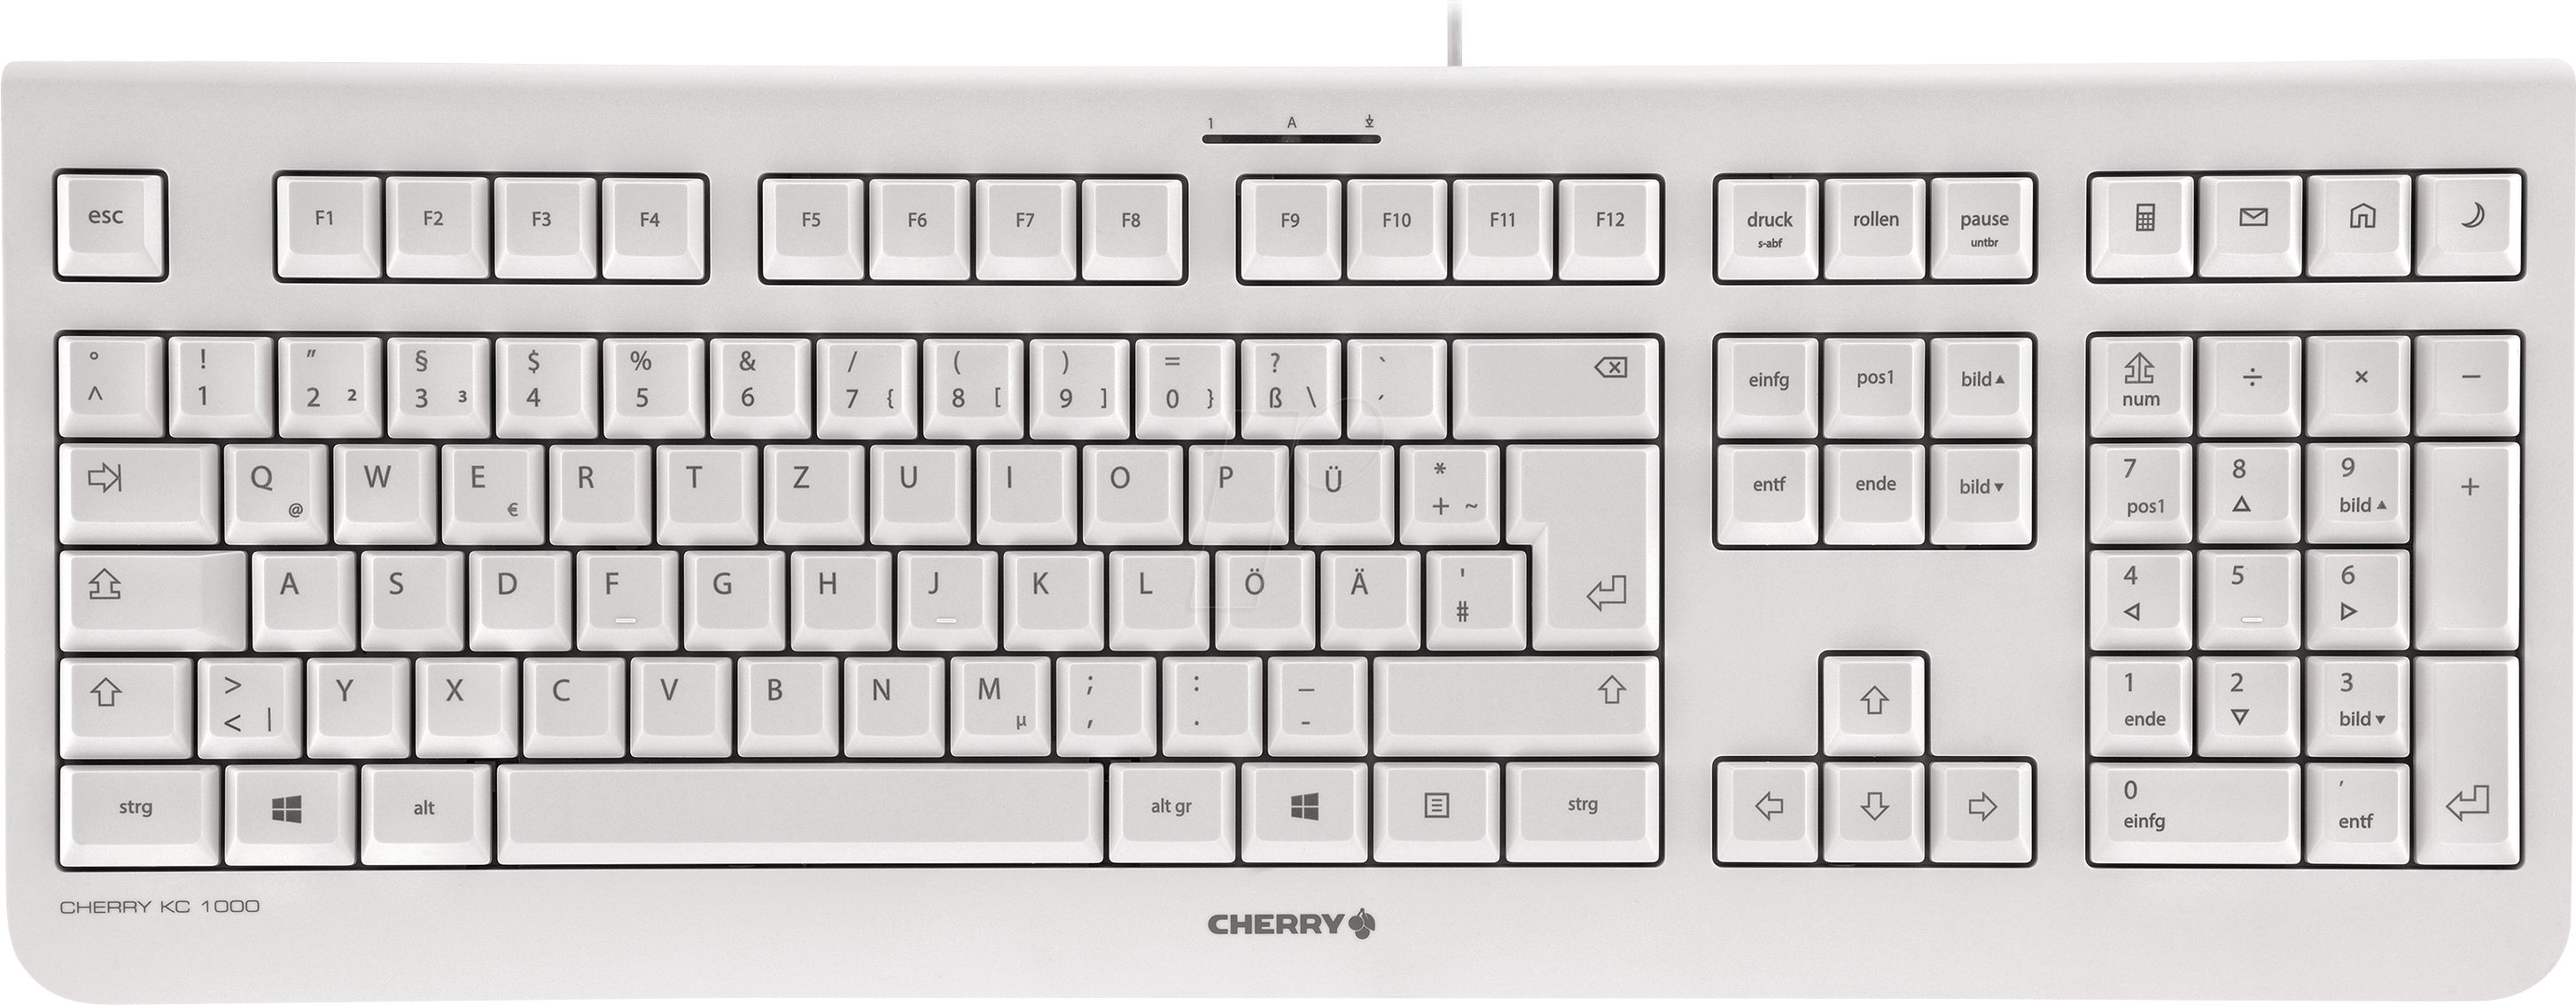 Us keyboard layout - charlotterety